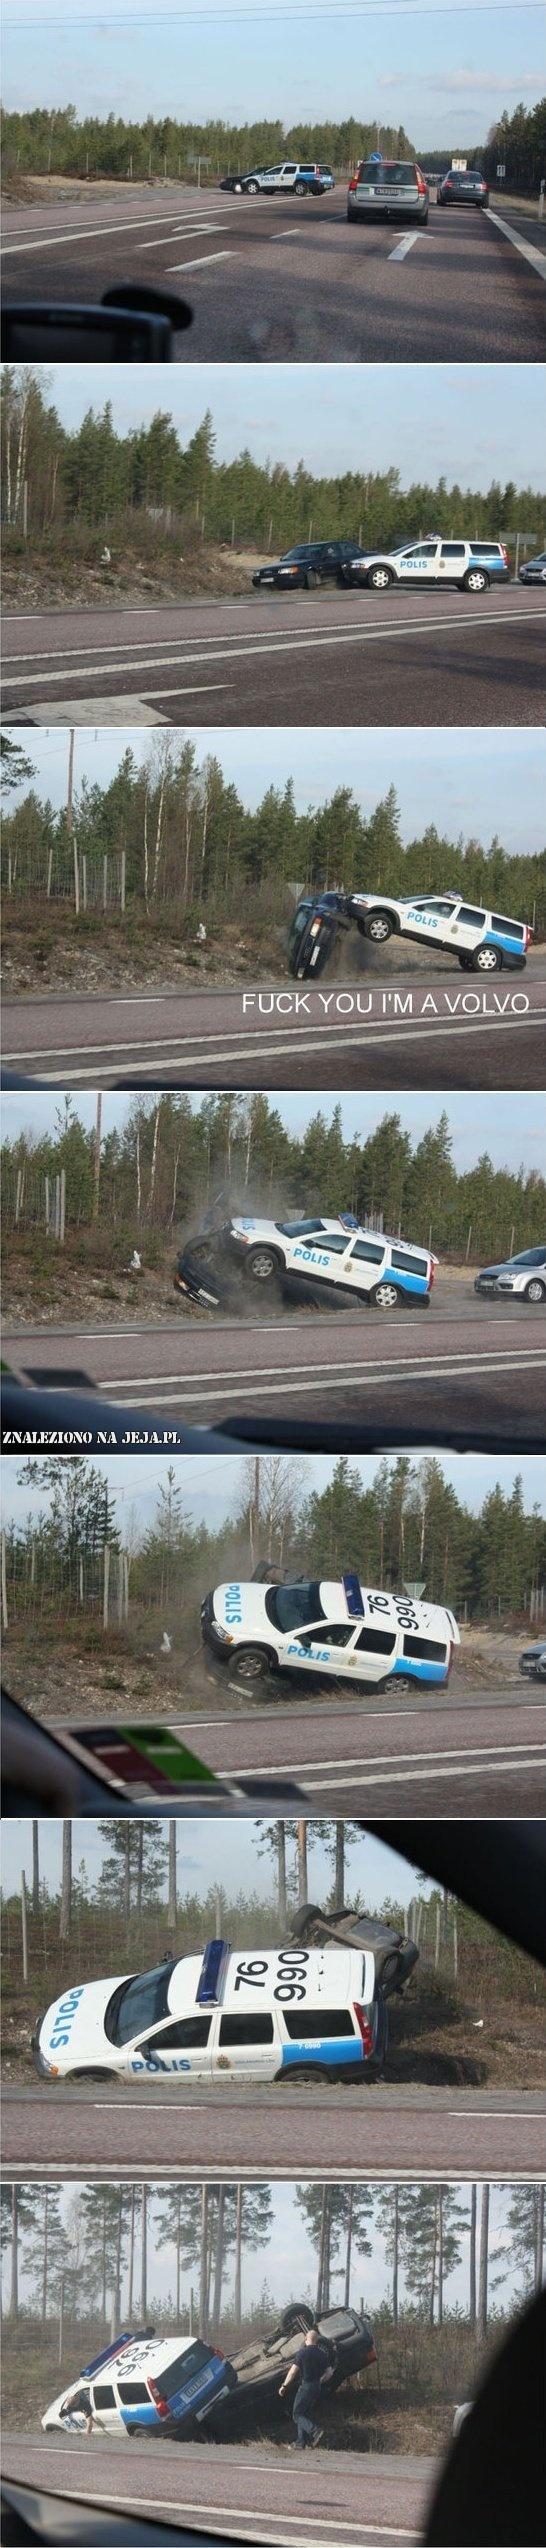 Policyjne Volvo w akcji